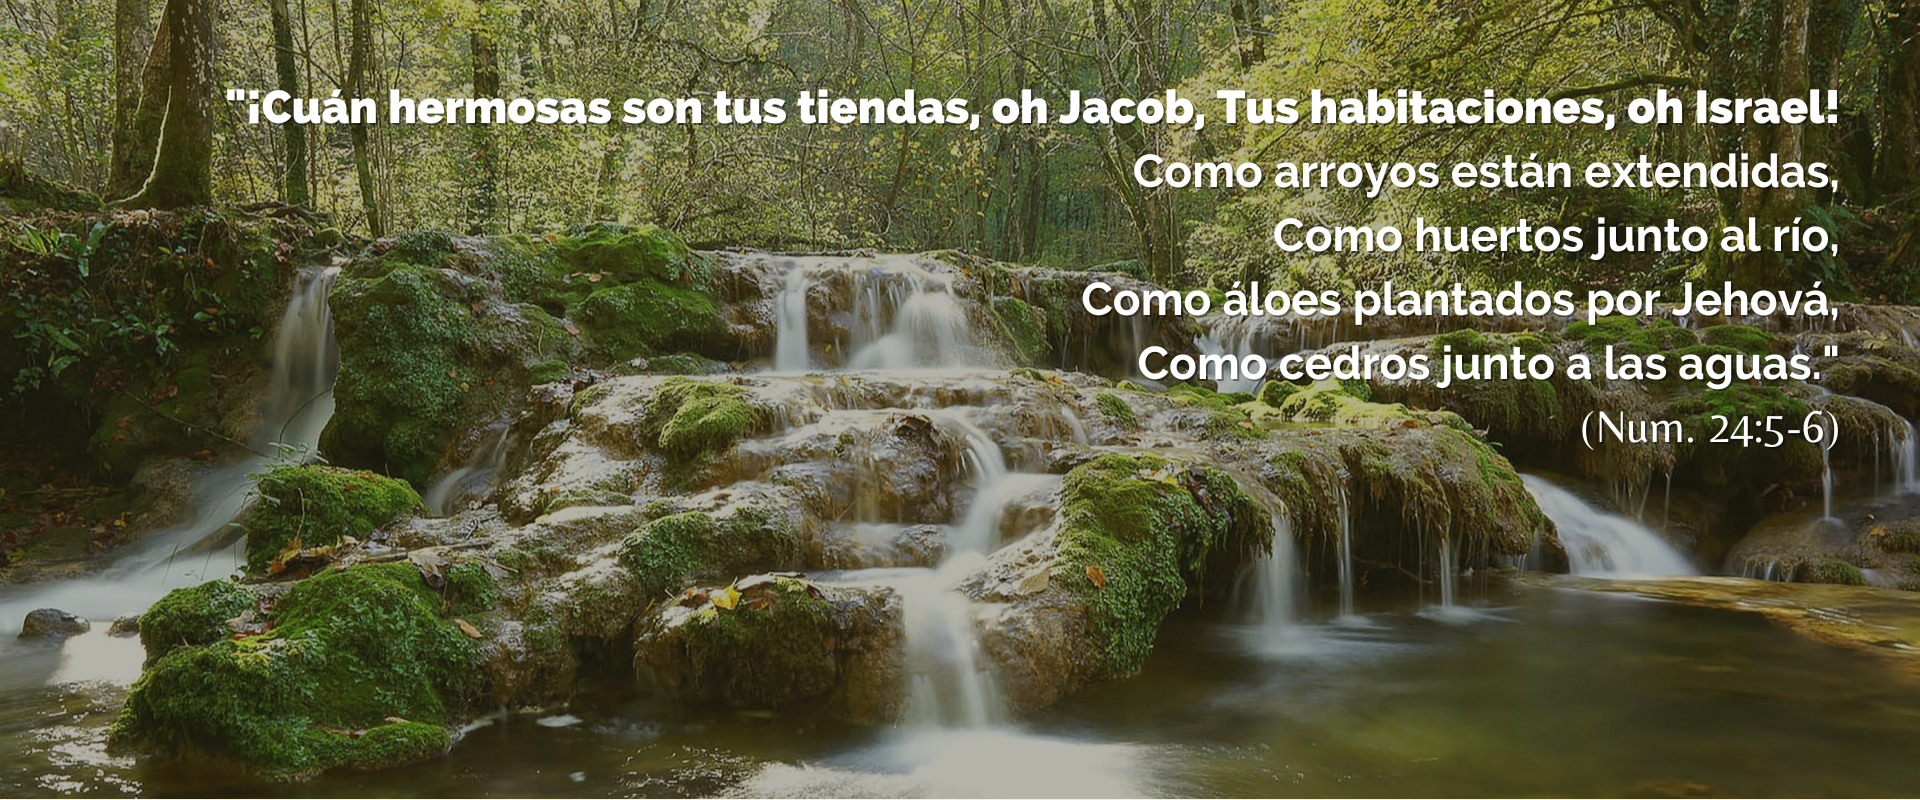 Rio de cascada con piedras y arboles frondosos con la inscripción de Numeros 24: 5-6